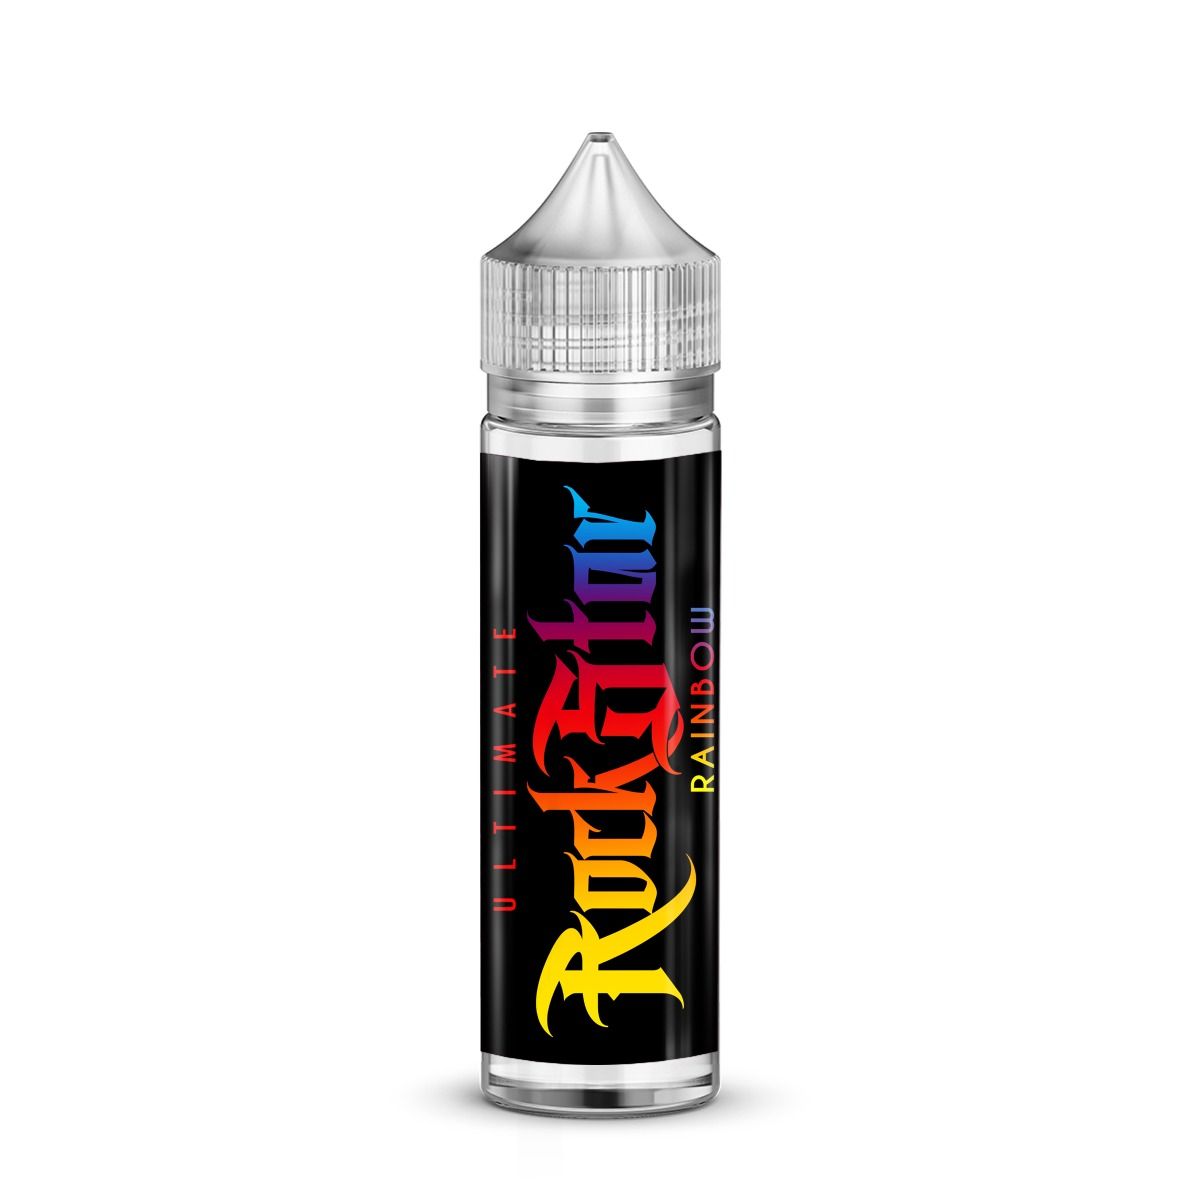 Ultimate Rainbow E-liquid by Rockstar 50ml Shortfill